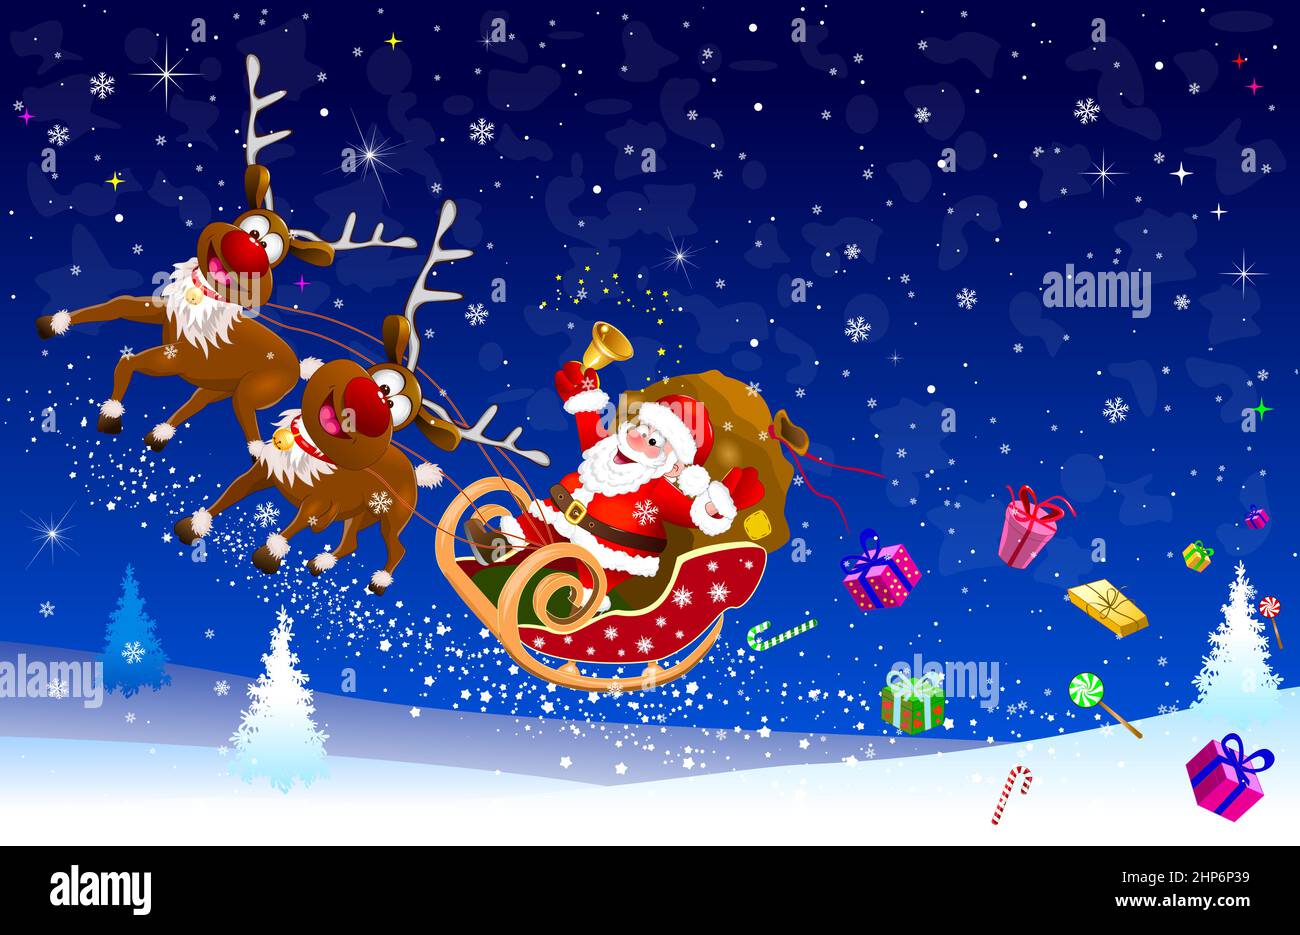 Santa on a sleigh with reindeer Stock Vector